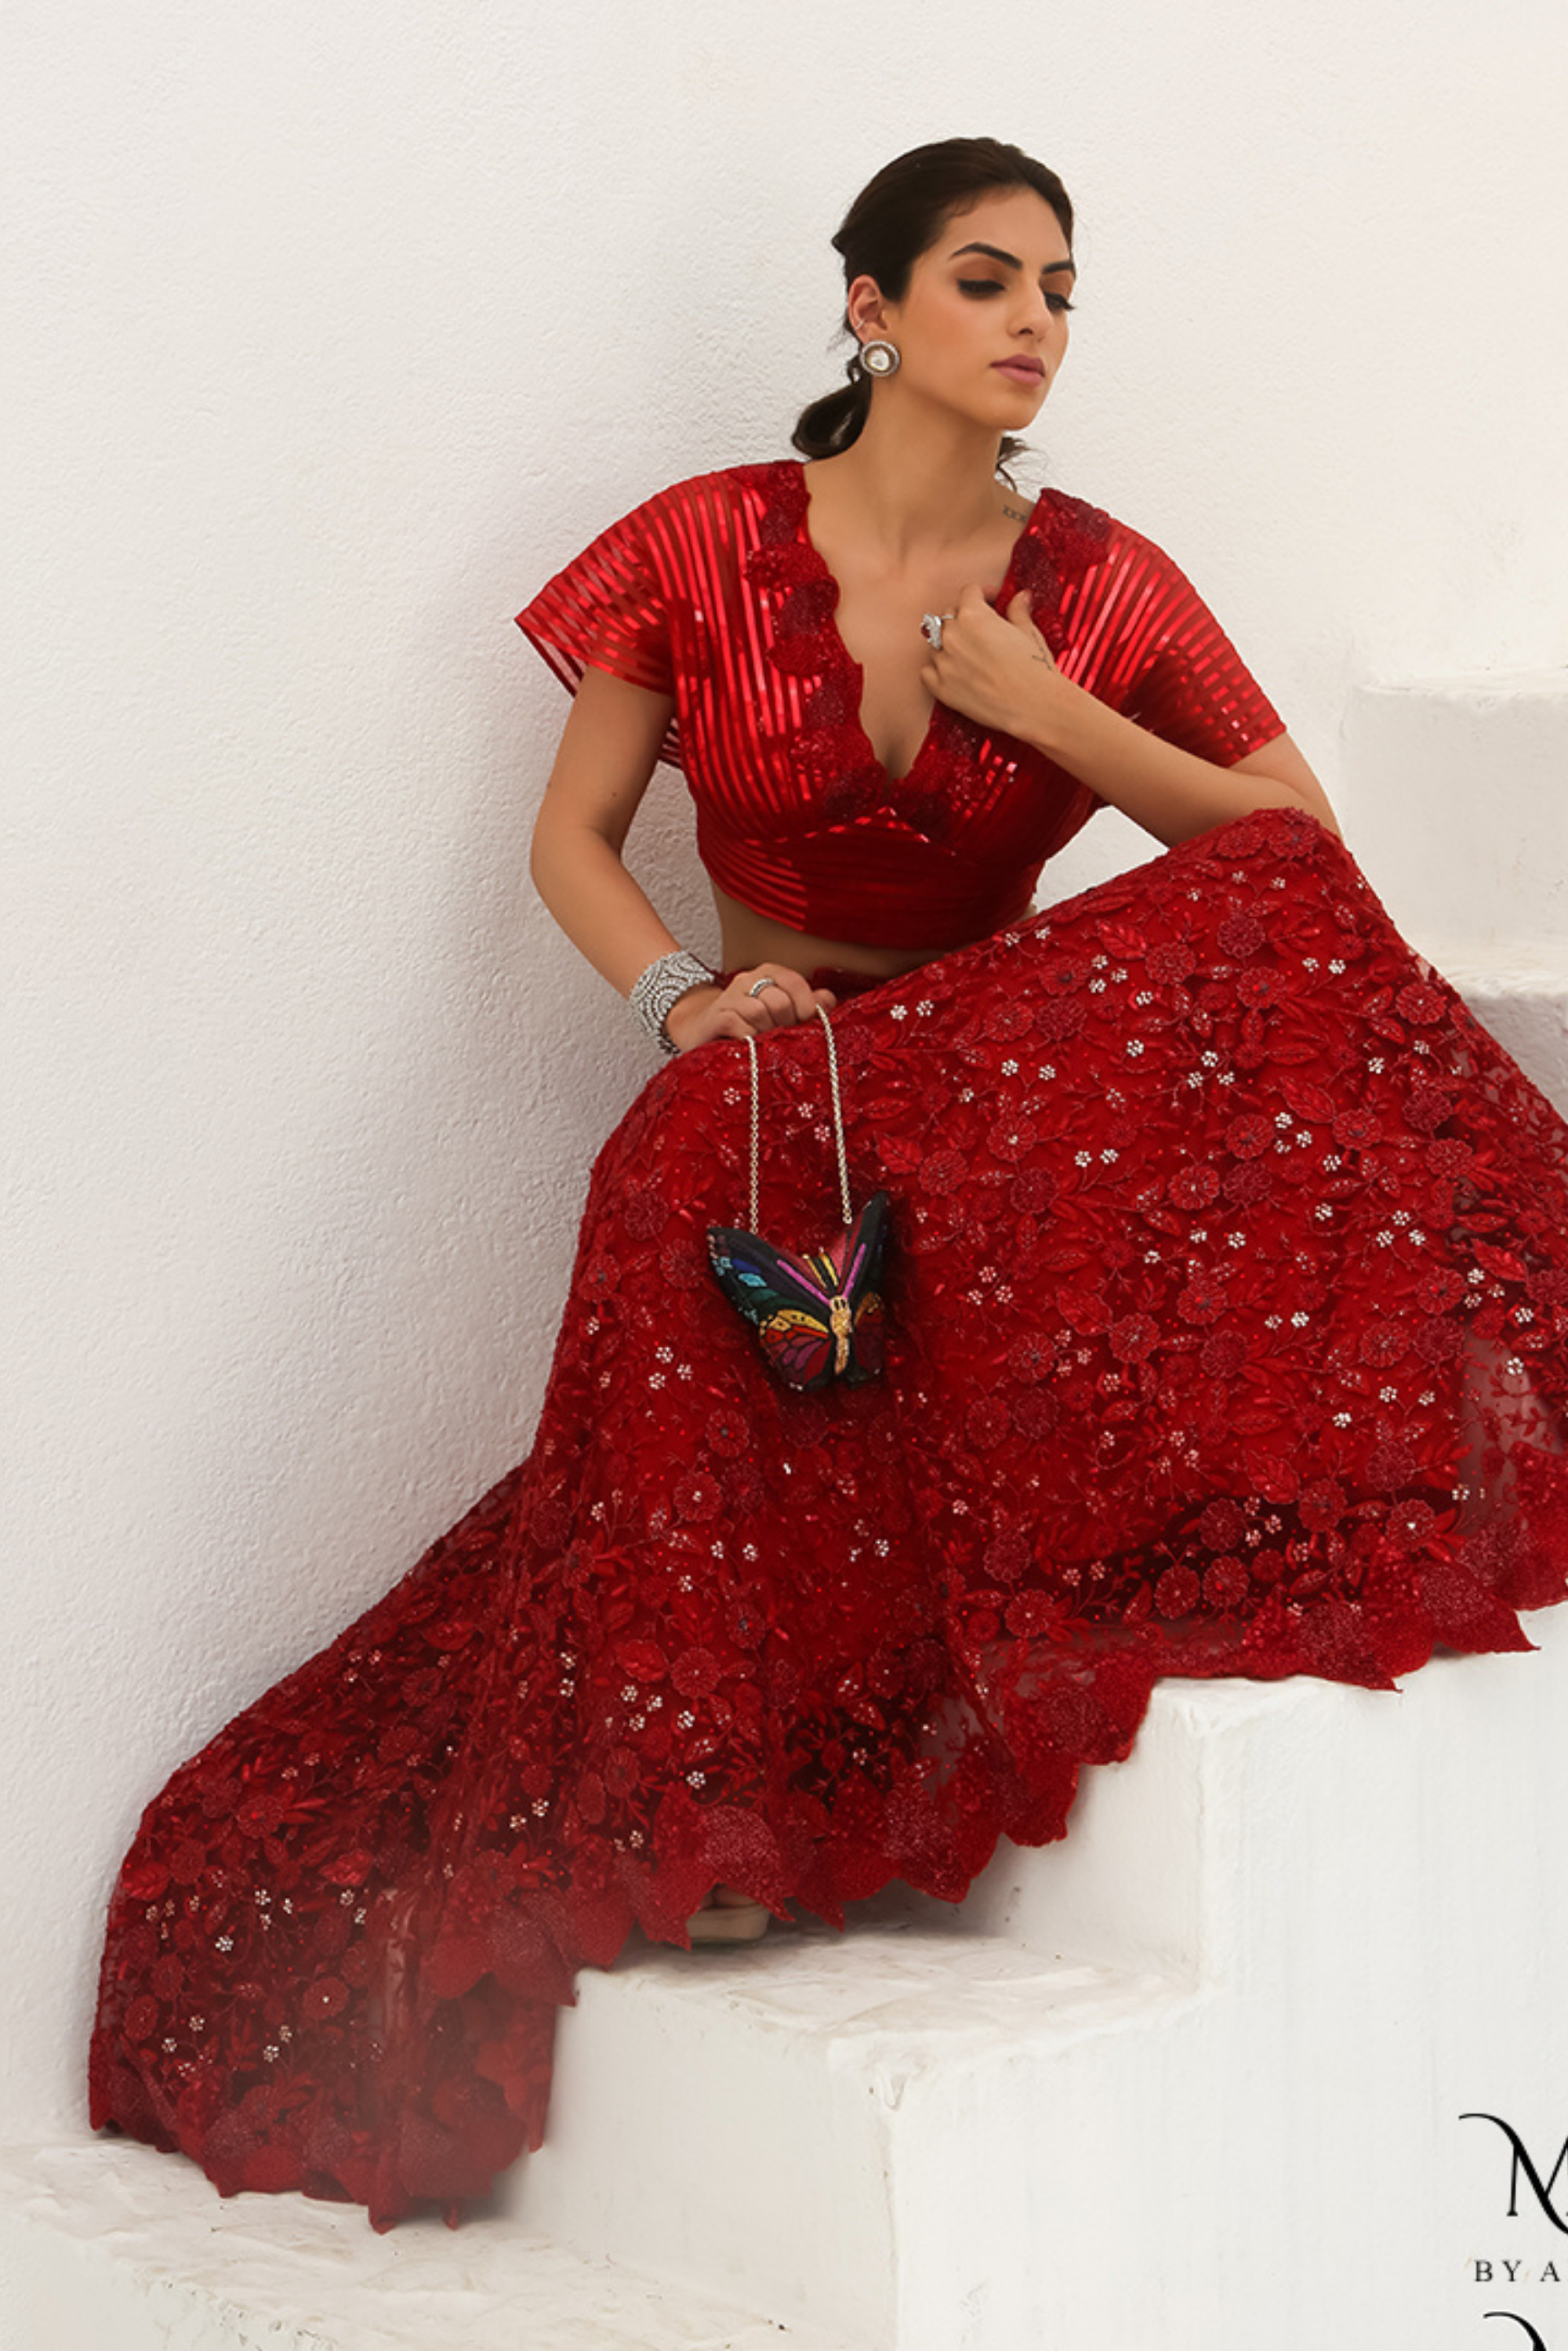 Crop top lehenga | lehenga designs latest | long skirts for women | party  wear lehenga | Lehenga designs simple, Long skirt top designs, Indian  bridesmaid dresses